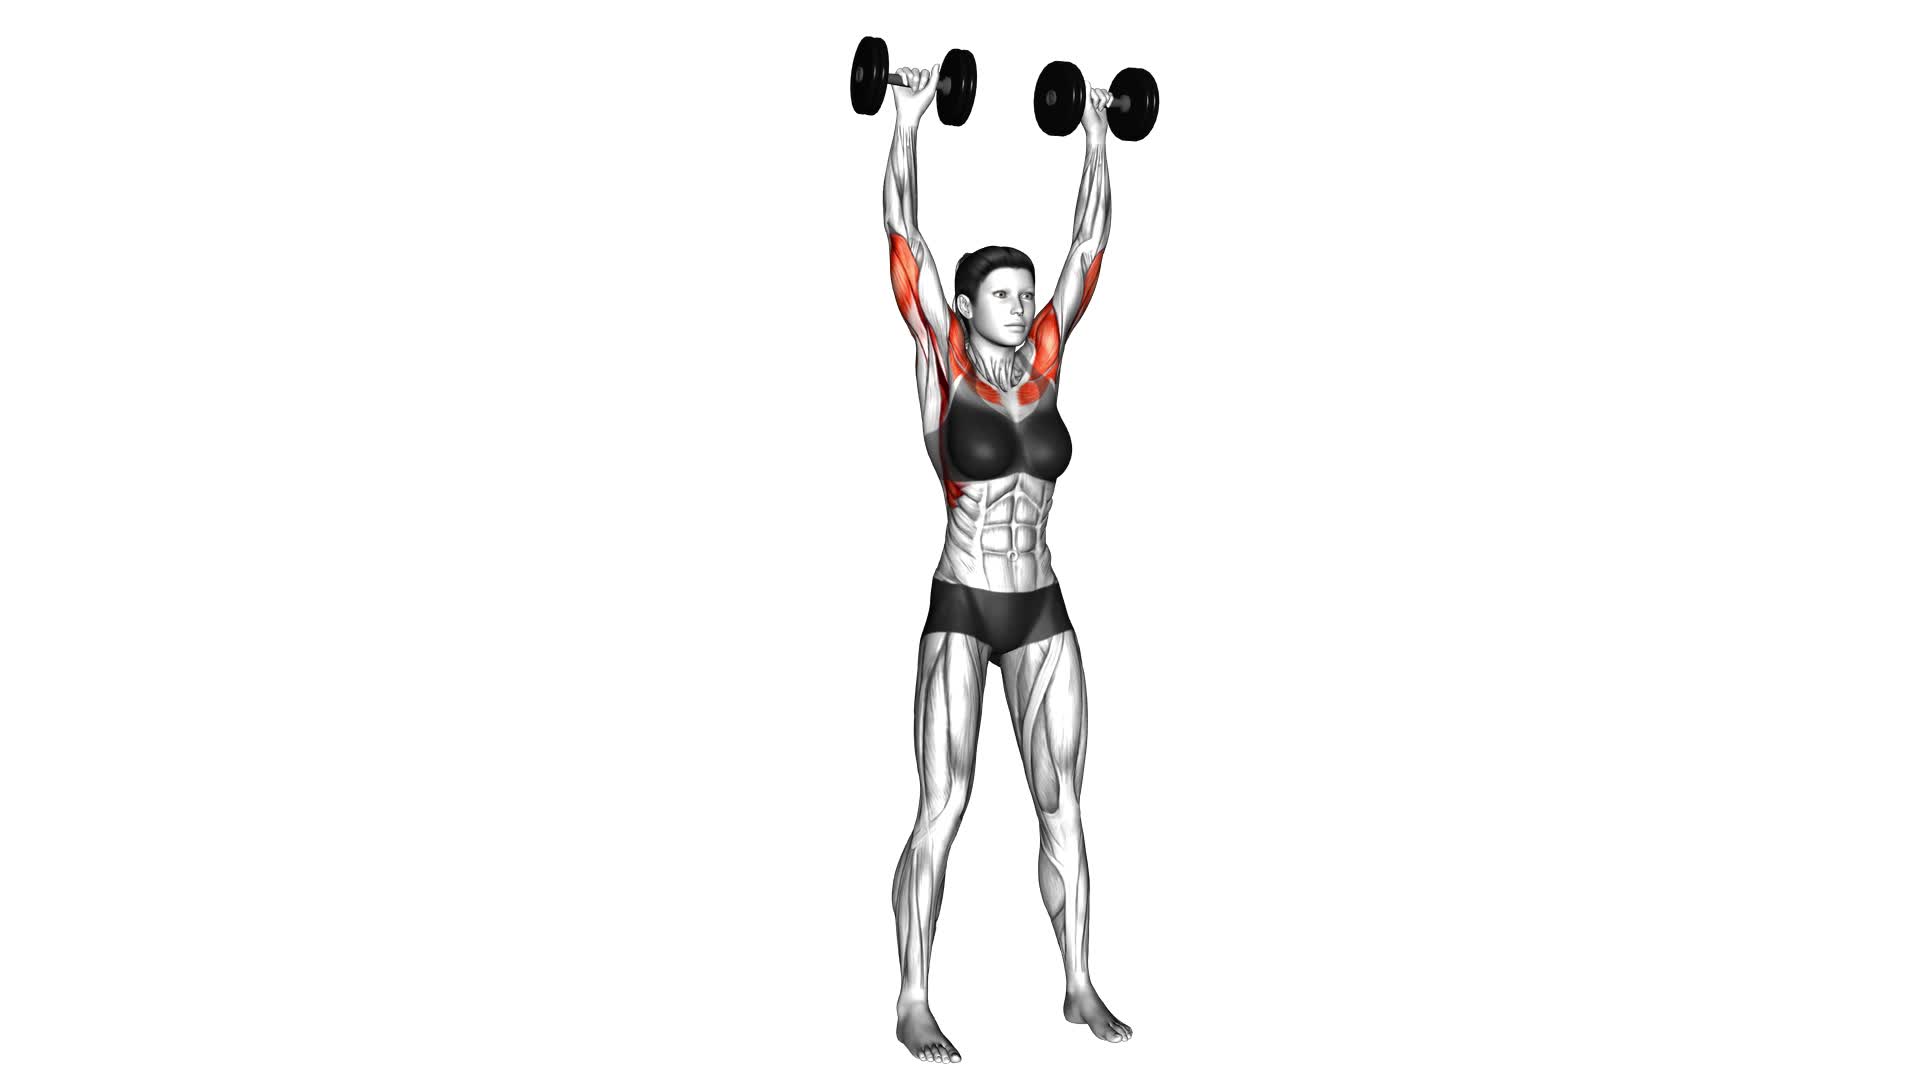 Dumbbell Standing Overhead Press (female) - Video Exercise Guide & Tips